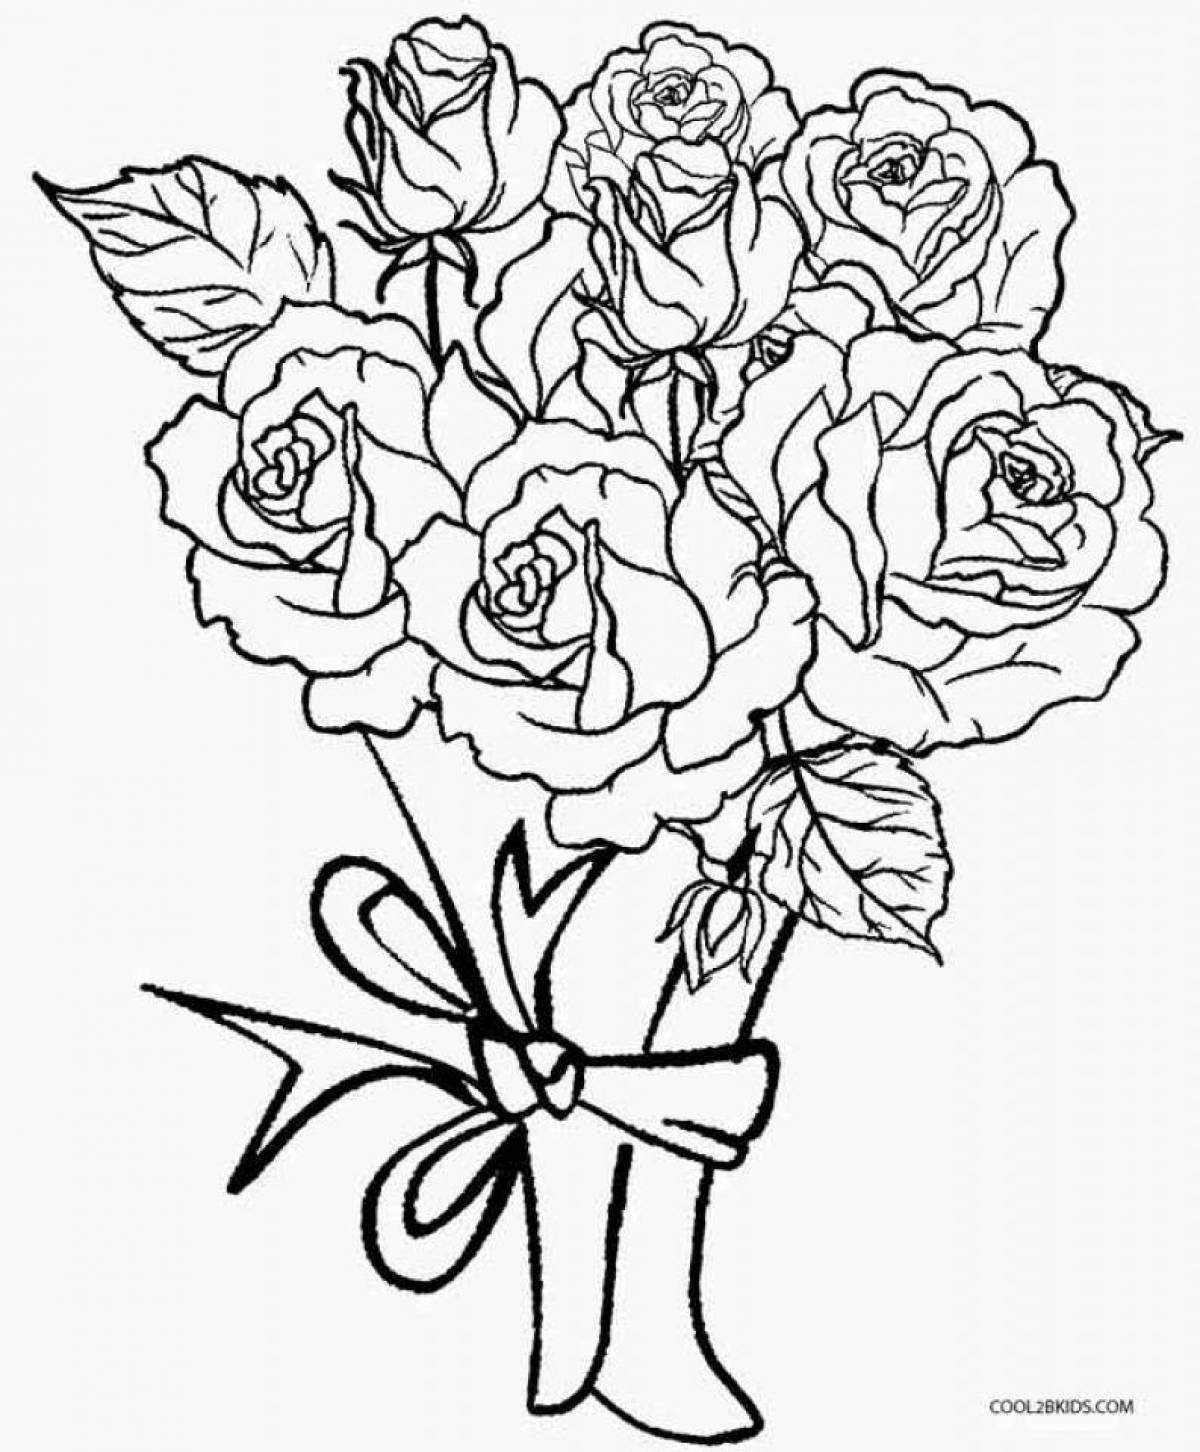 Раскраска блаженный букет роз